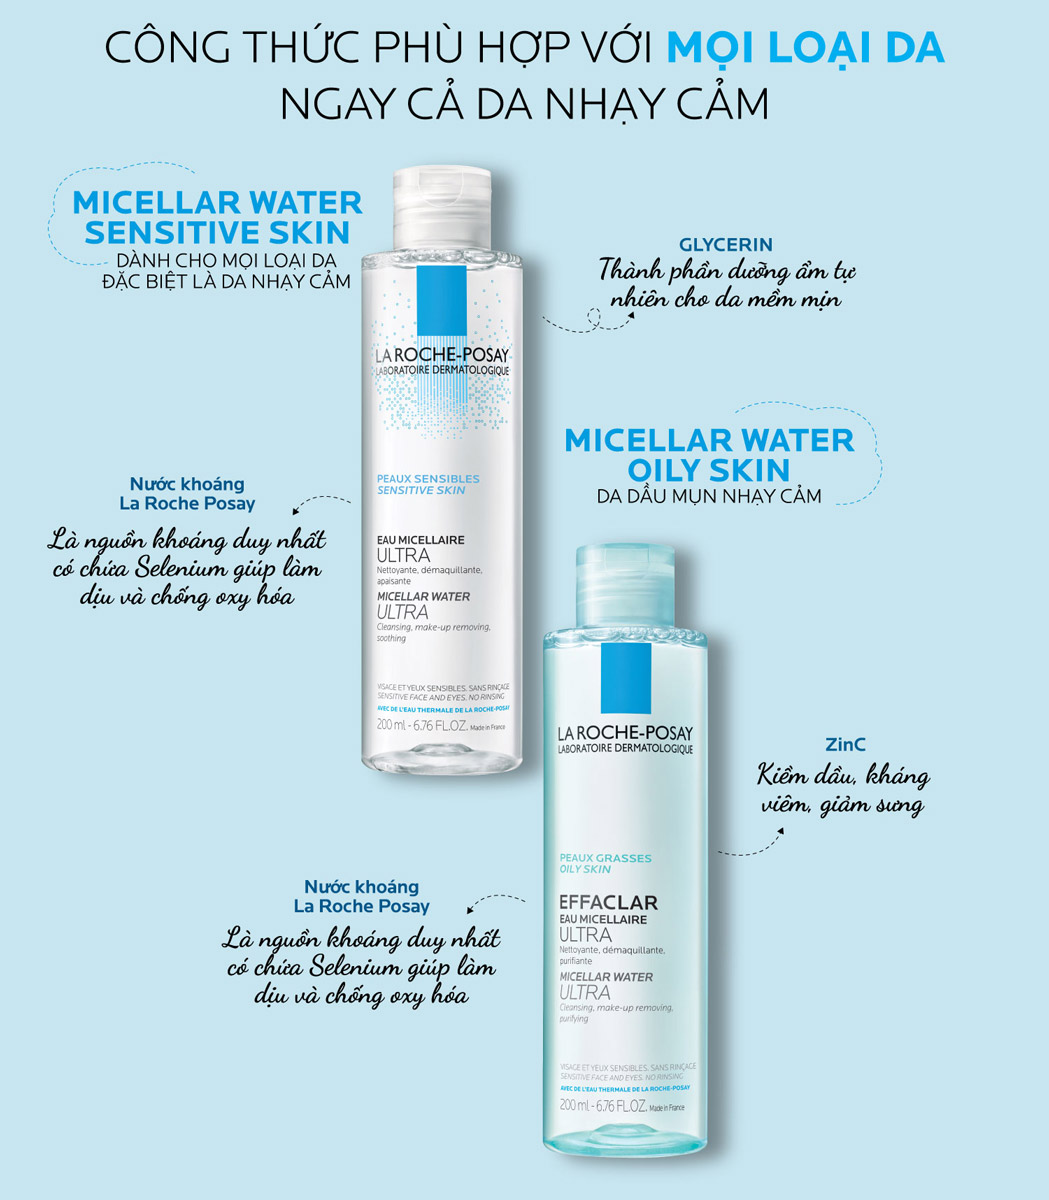 Nước Tẩy Trang La Roche-Posay Micellar Water Ultra Sensitive Skin dành cho mọi loại da, đặc biệt là da nhạy cảm